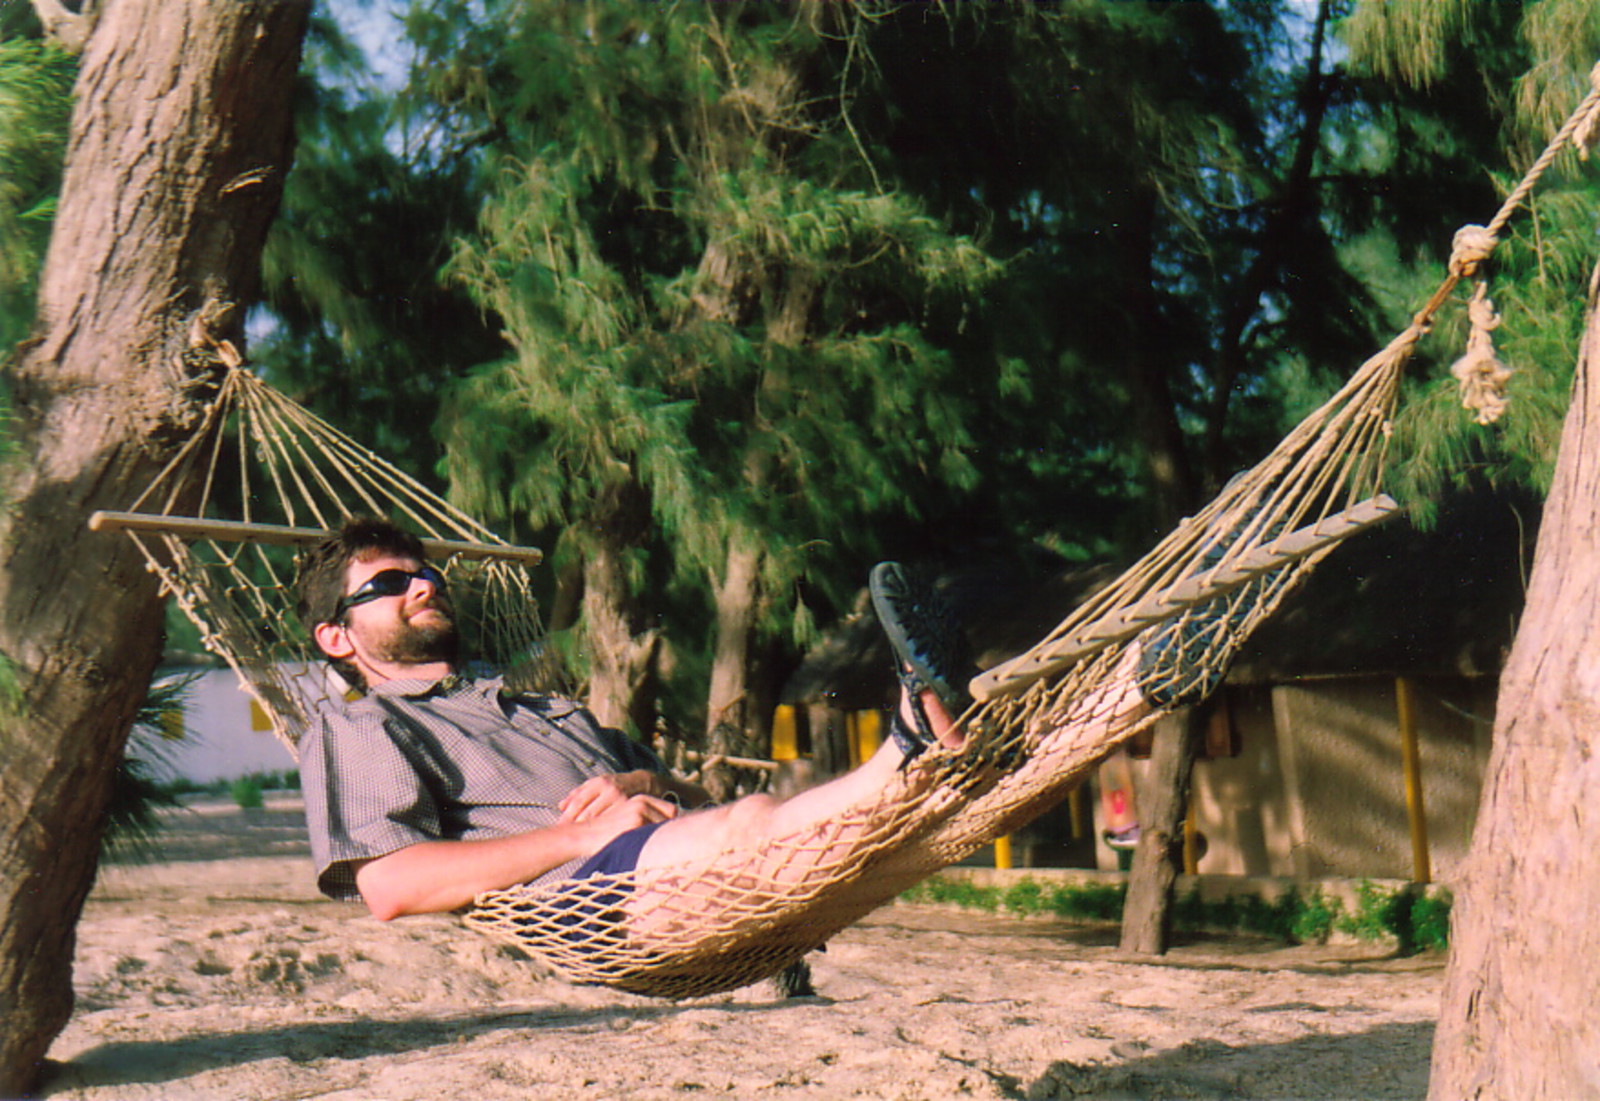 Mark relaxing in a hammock in St-Louis